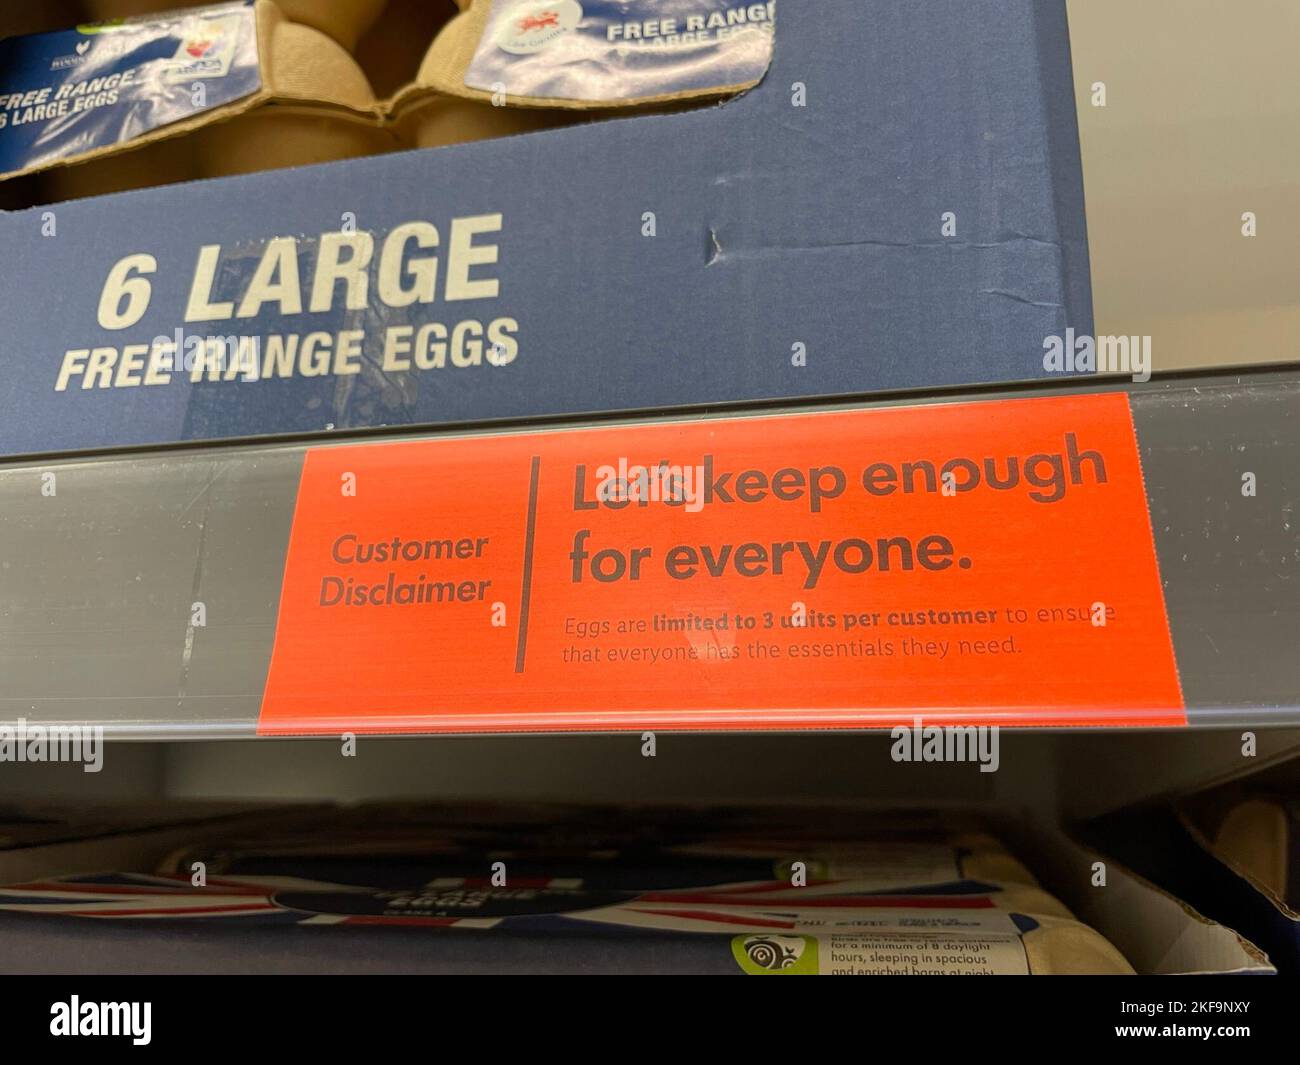 Signalisation pour les œufs sur les étagères dans un magasin Lidl à Slough.  Asda et Lidl limitent le nombre de boîtes d'œufs que les clients peuvent  acheter en raison des perturbations de